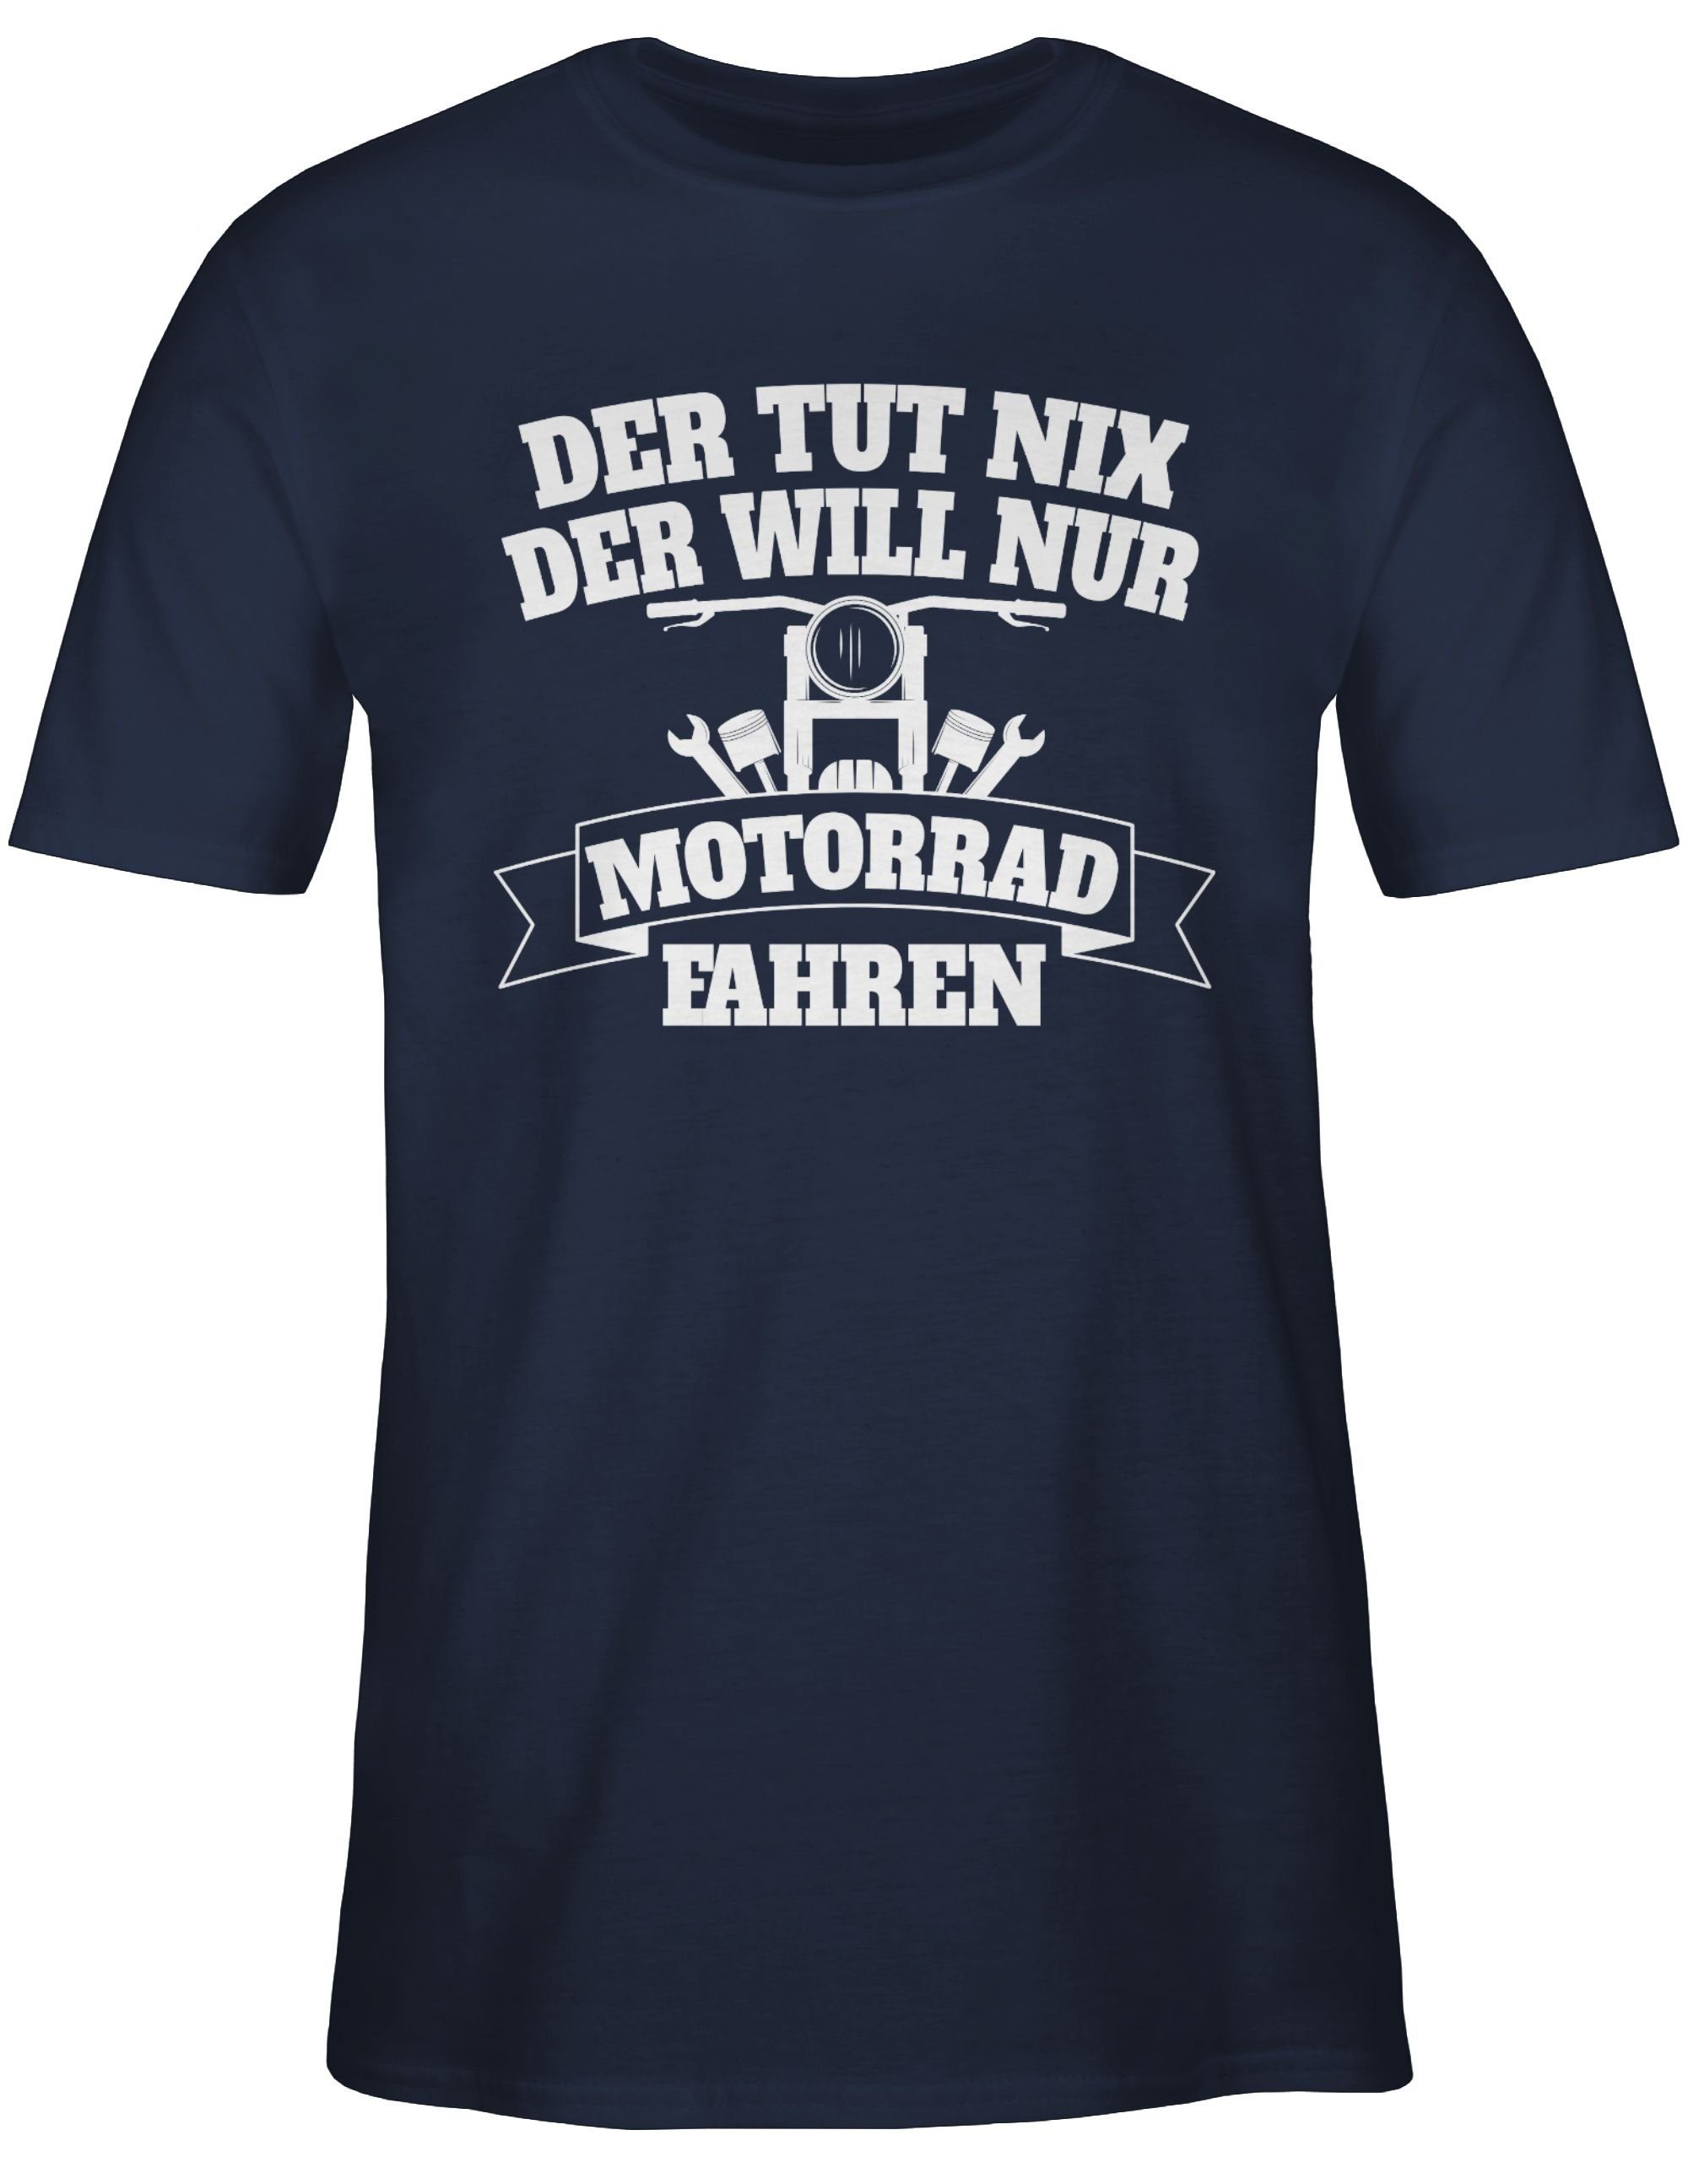 Shirtracer T-Shirt Der tut 3 der nix Navy Motorrad nur will Motorrad Biker Blau fahren